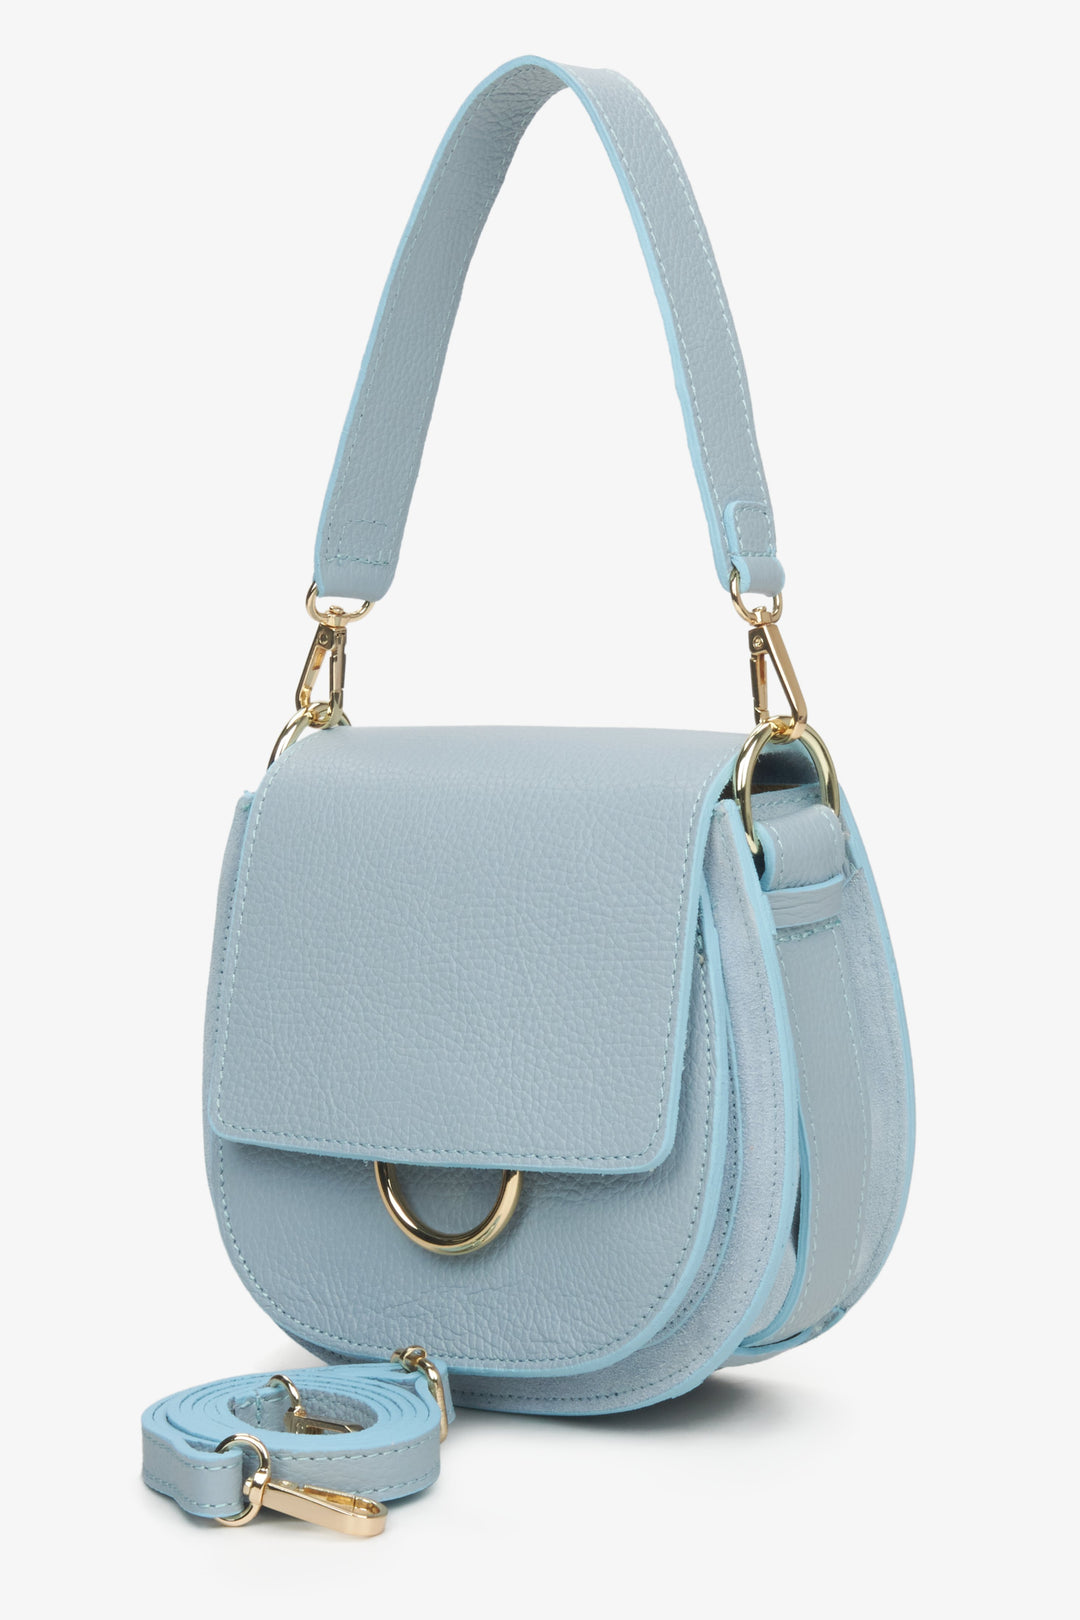 Niebieska, mała torebka damska z włoskiej skóry naturalnej na ramię z dodatkowym paskiem.